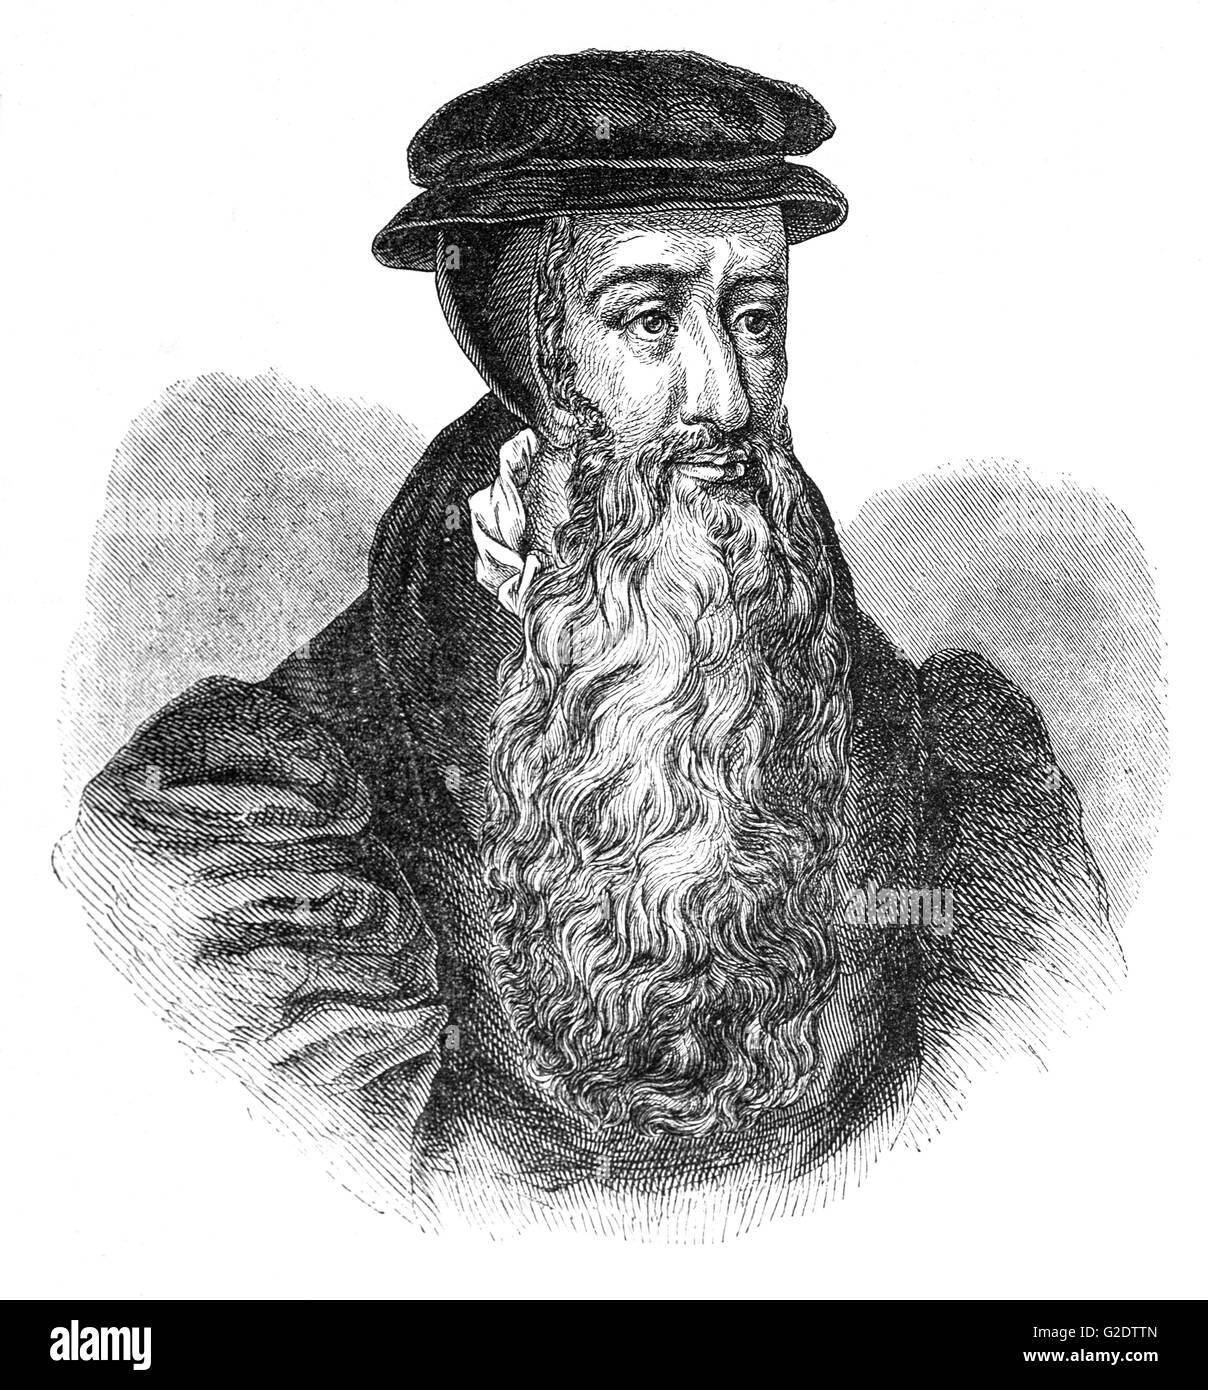 John Knox (1513 - 1572) fue un clérigo escocés, teólogo y escritor, quien fue un líder de la Reforma Protestante y es considerado como el fundador de la Iglesia Presbiteriana en Escocia. Foto de stock